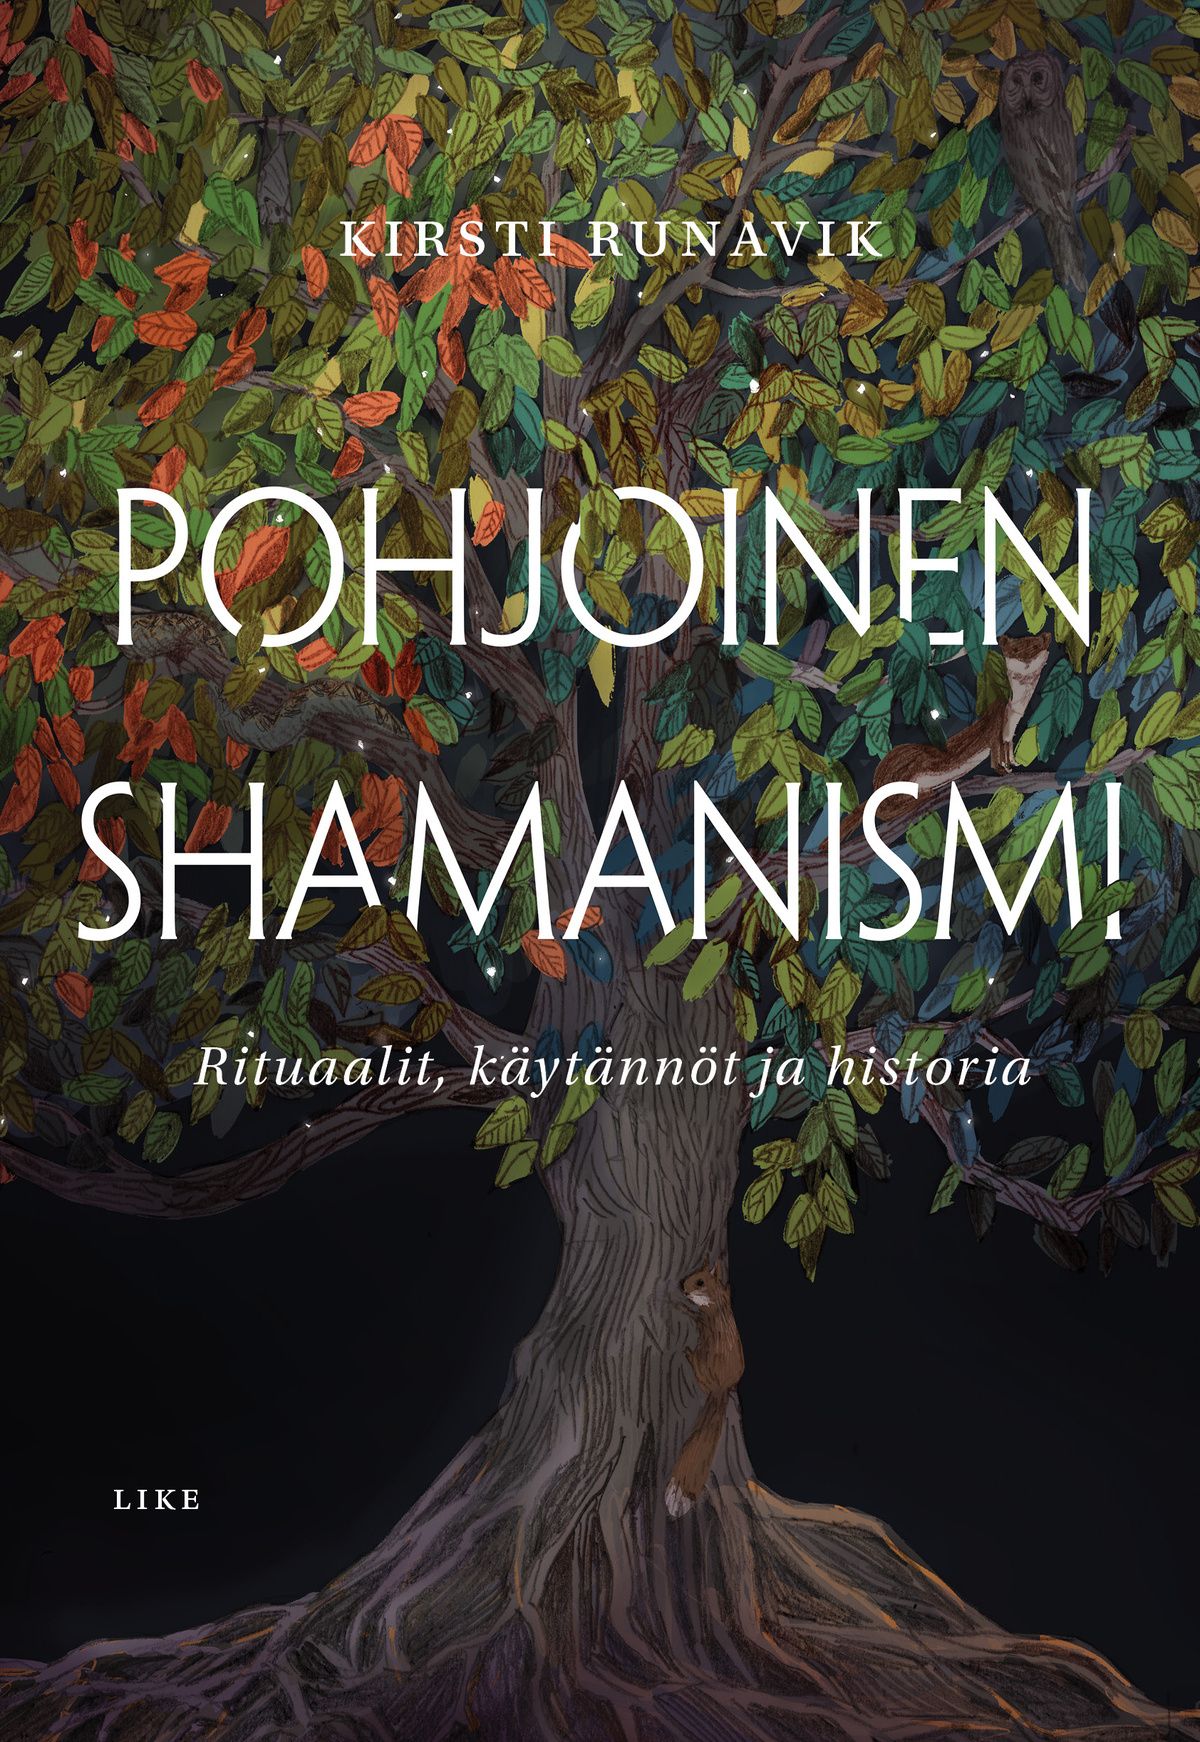 Kirsti Runavik : Pohjoinen shamanismi